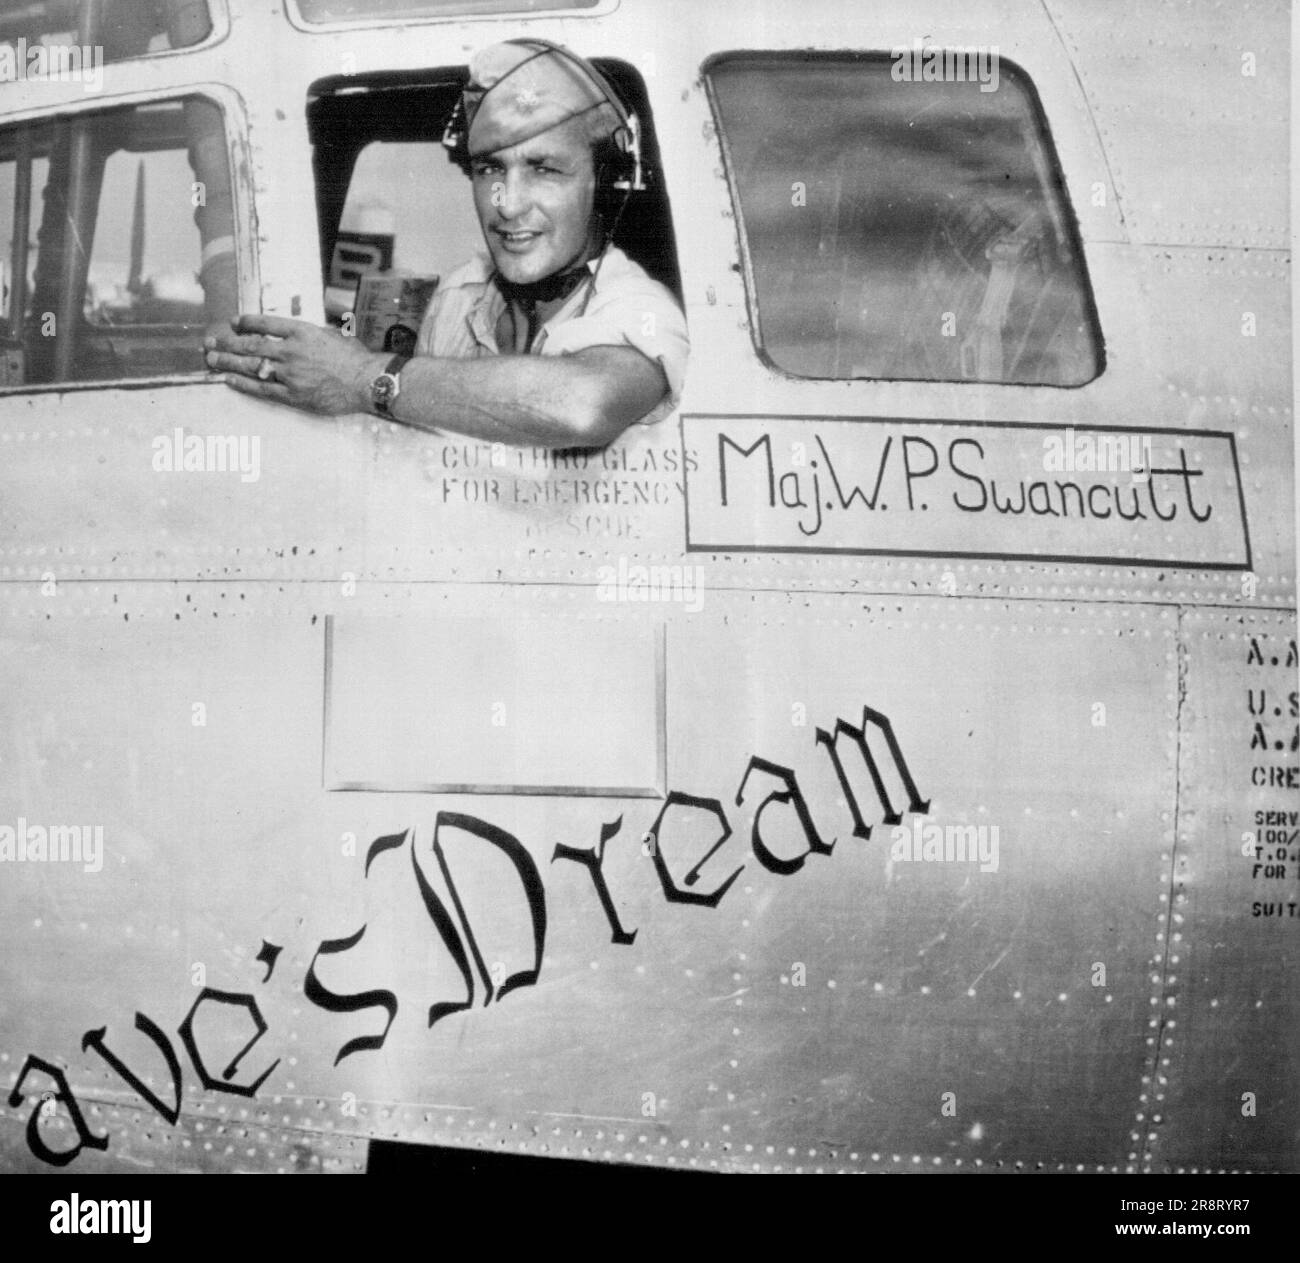 Pilot des Flugzeugs, das Bomben abwerfen wird - Major Woodrow P. Swancutt, Wisconsin Rapids, Wisconsin, blickt aus einem Fenster der B-29, die er steuern wird, wenn sie die Atombombe auf Bikini abwirft. Das Flugzeug namens „Dave's Dream“ wird von einem Stützpunkt in Kwajalein fliegen, wo Swancutt abgebildet ist. 27. Juni 1946. (Foto von AP Wirephoto). Stockfoto